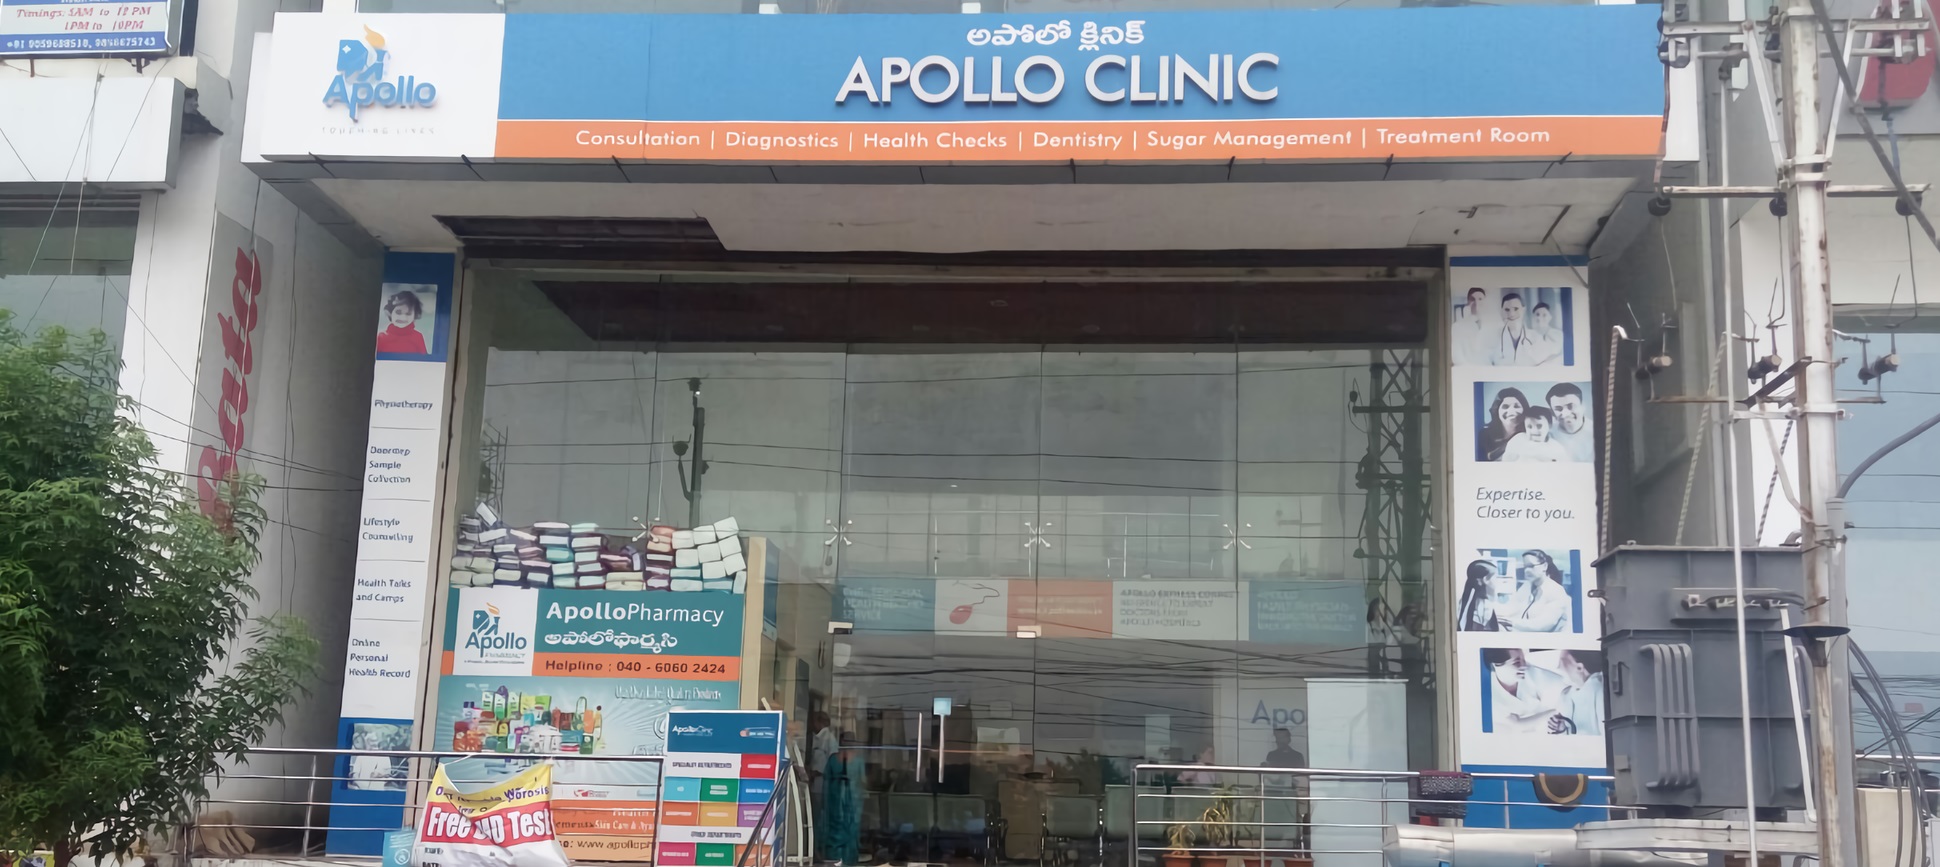 Apollo Clinic - Chanda Nagar